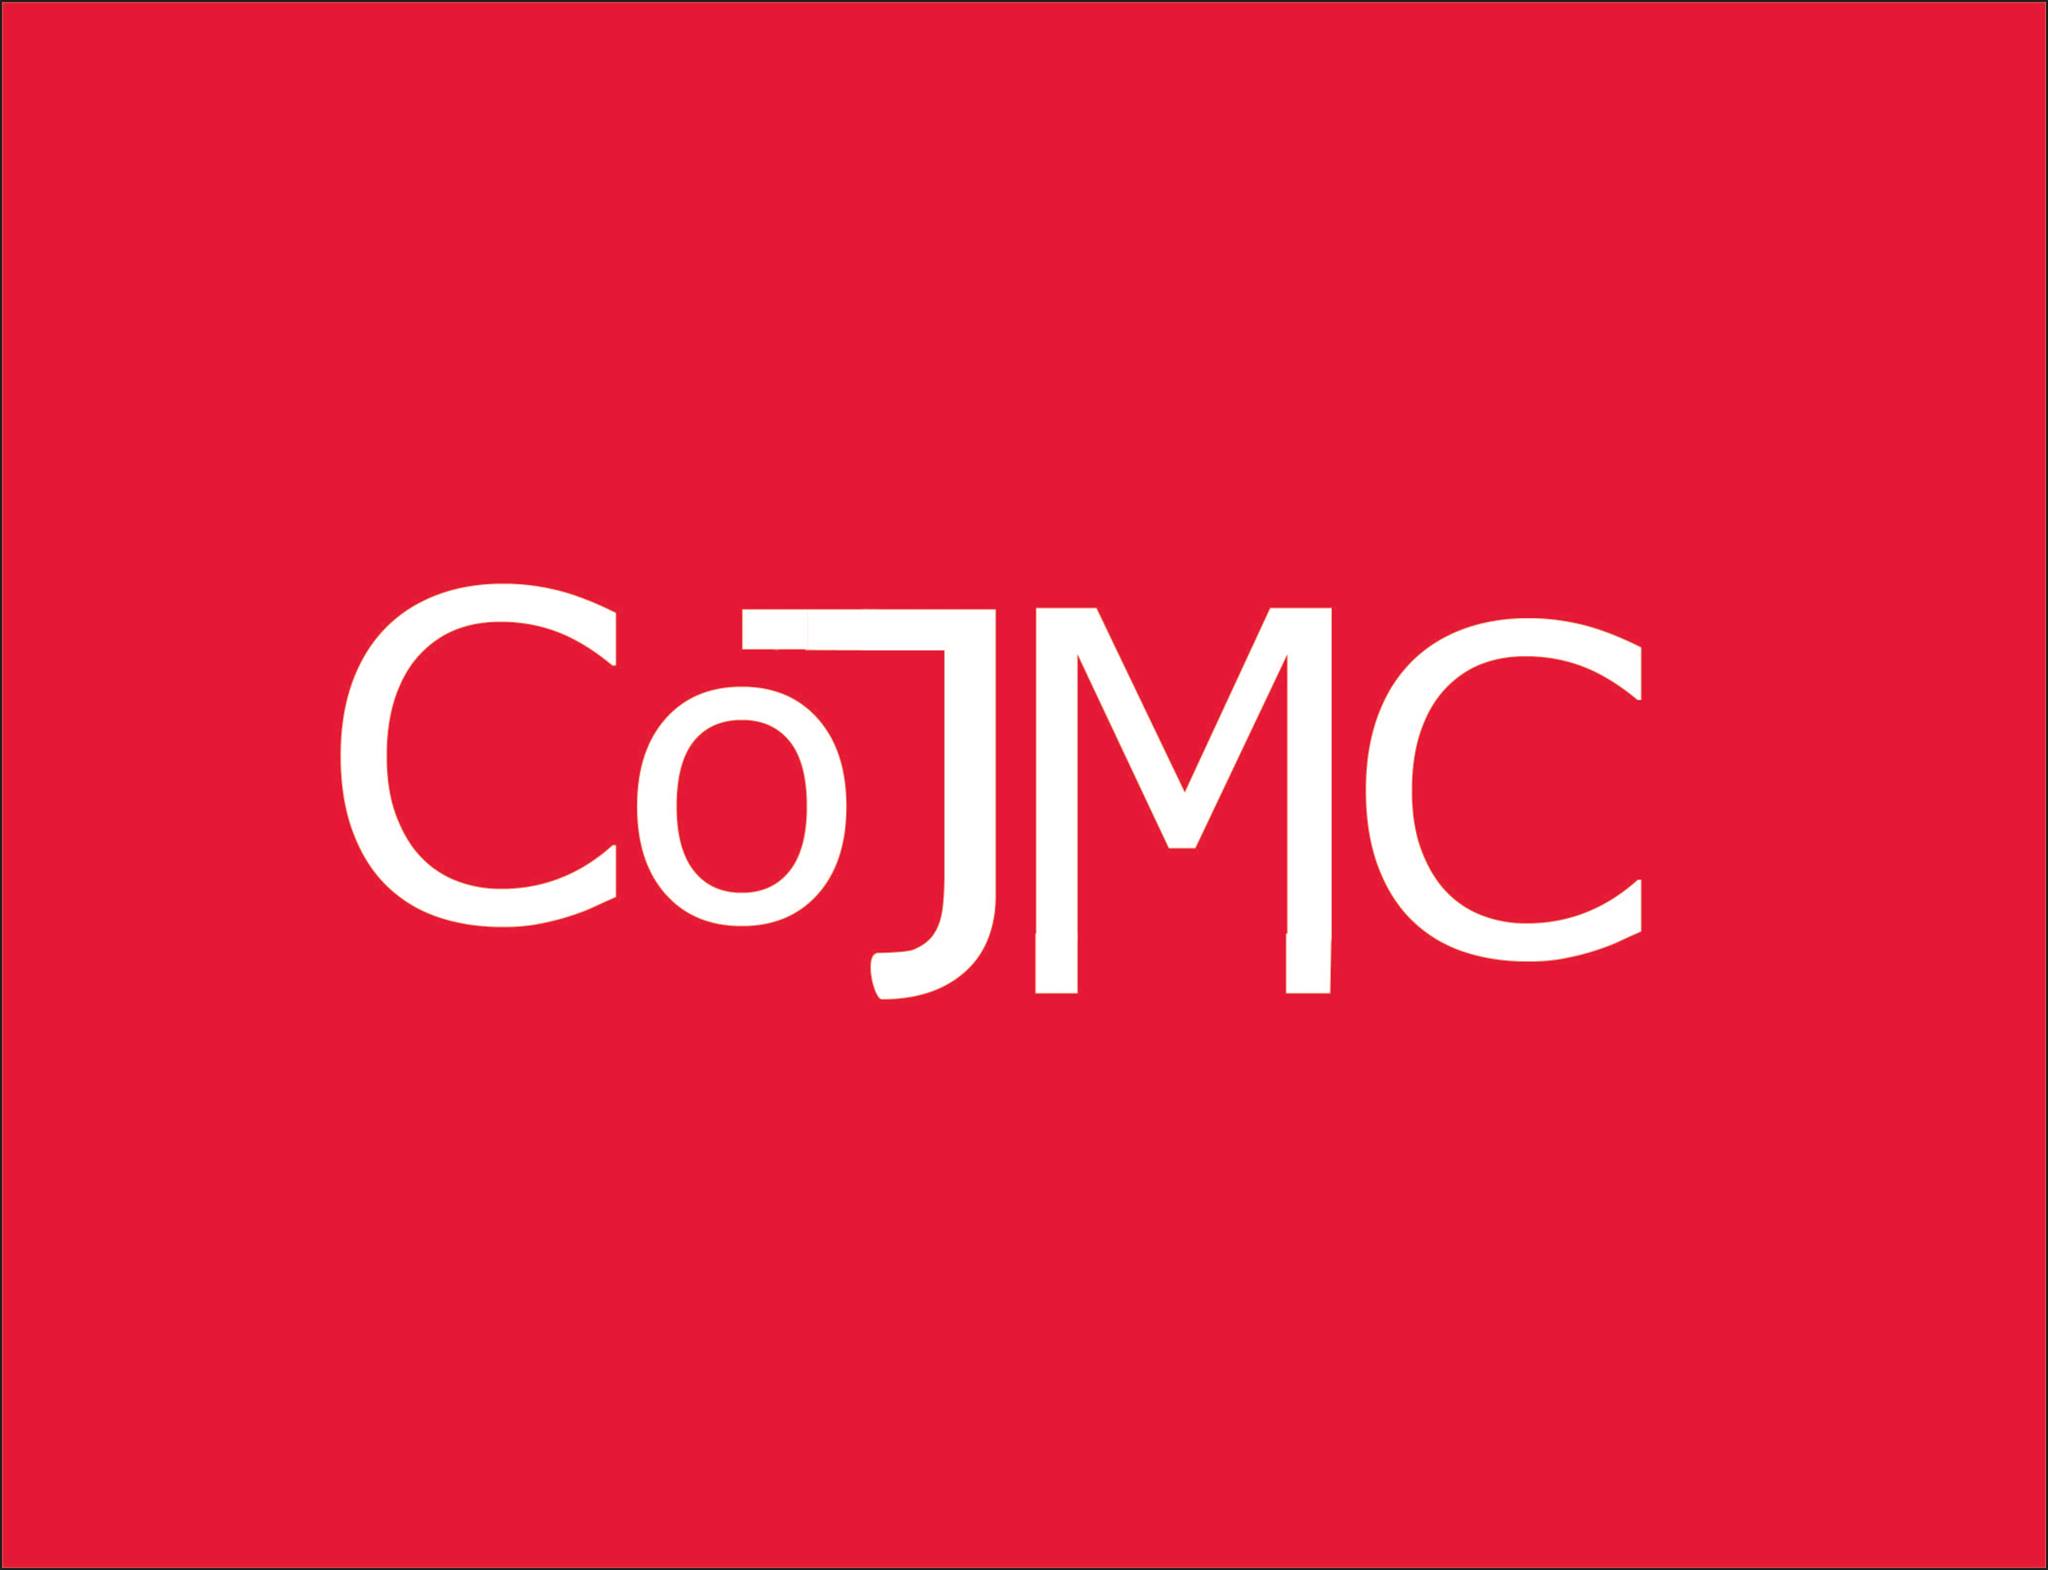 CoJMC Fall Media Trip